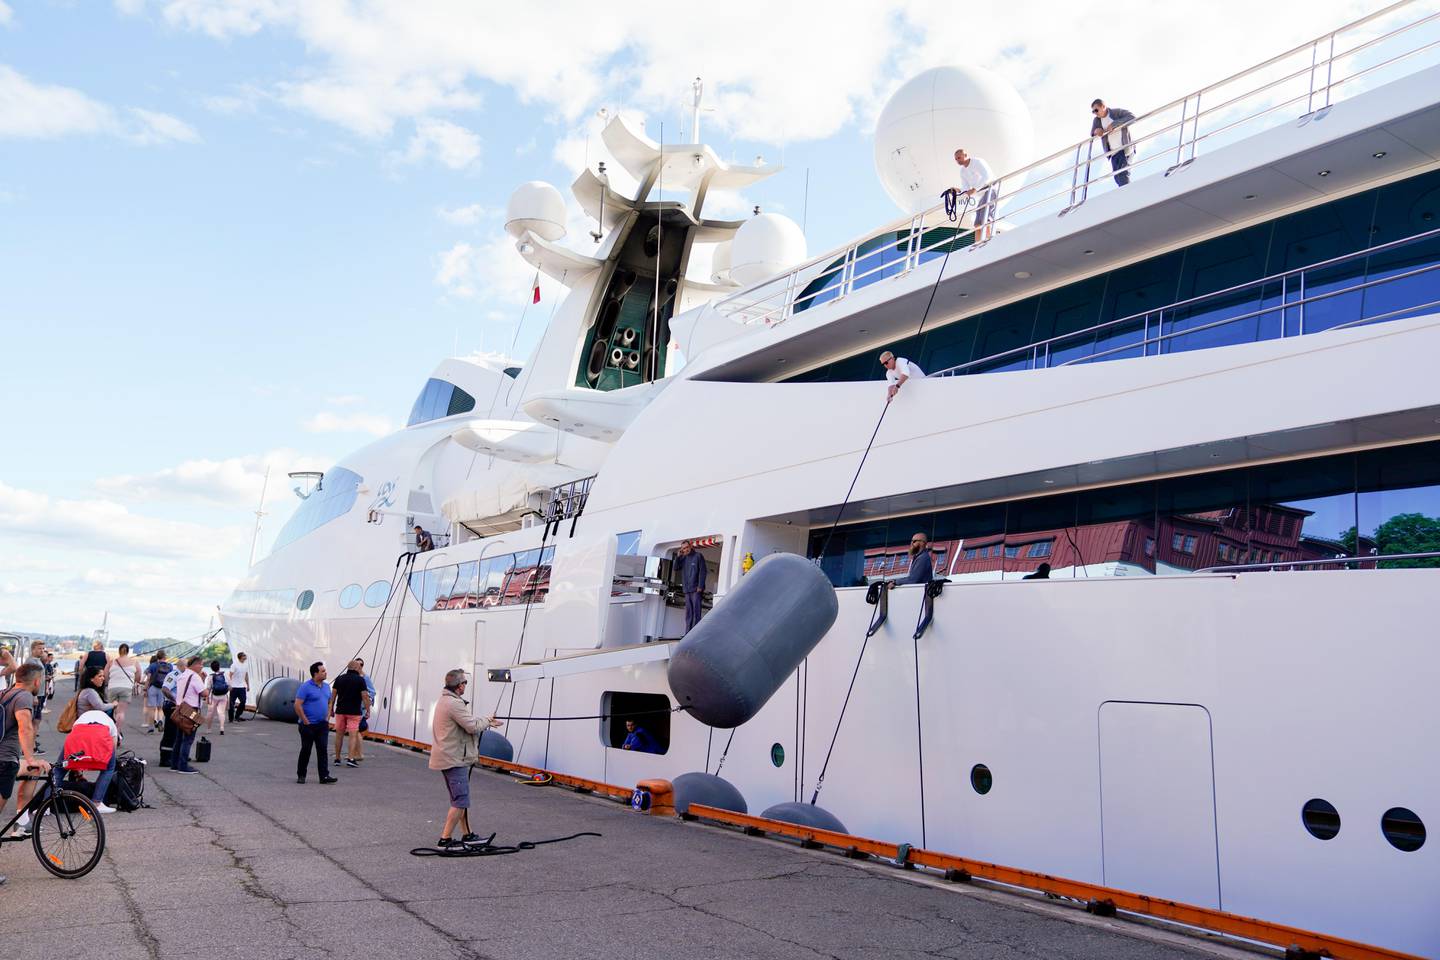 Oslo 20190716. 
Den 141 meter lange Swift 141 yachten Yas, er en av verdens dyreste yachter. Her har den ankommet Oslo havn. Yachten, som har plass til 60 gjester, eies av sheikh Hamdan bin Zayed al Nahyan og hadde en prislapp på 180 millioner dollar.
Foto: Fredrik Hagen / NTB scanpix